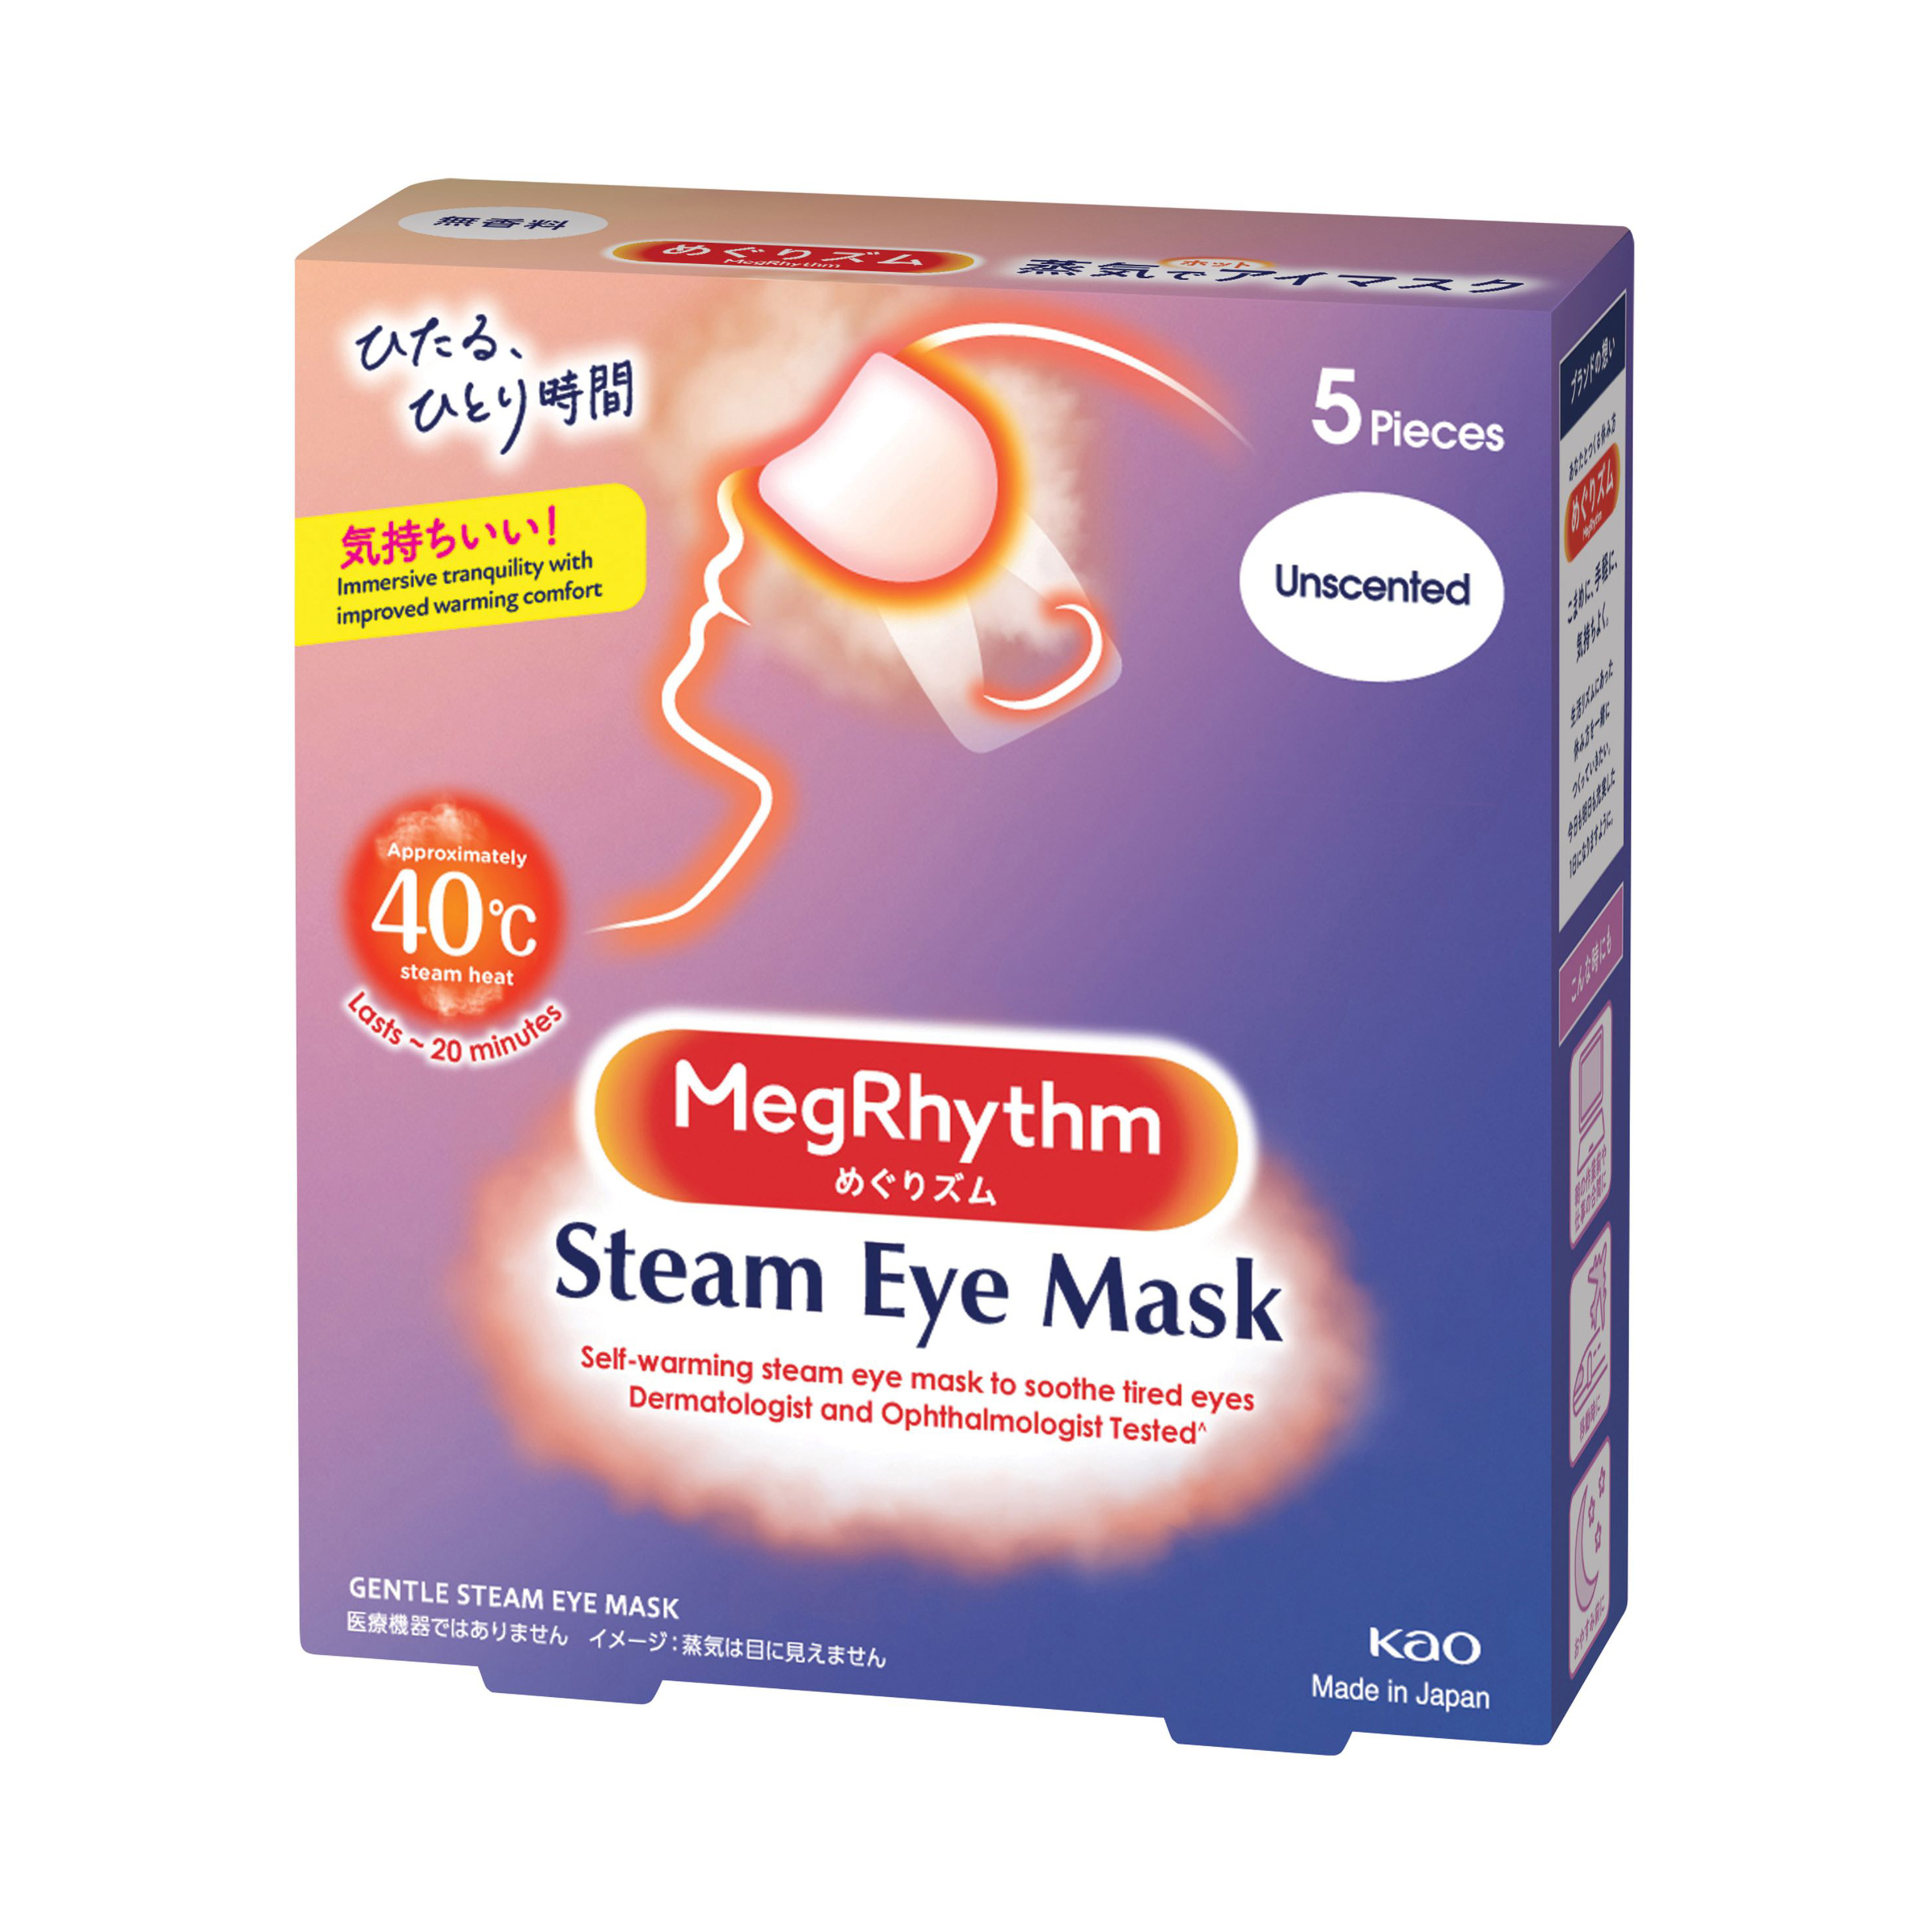 Steam eye mask фото 93